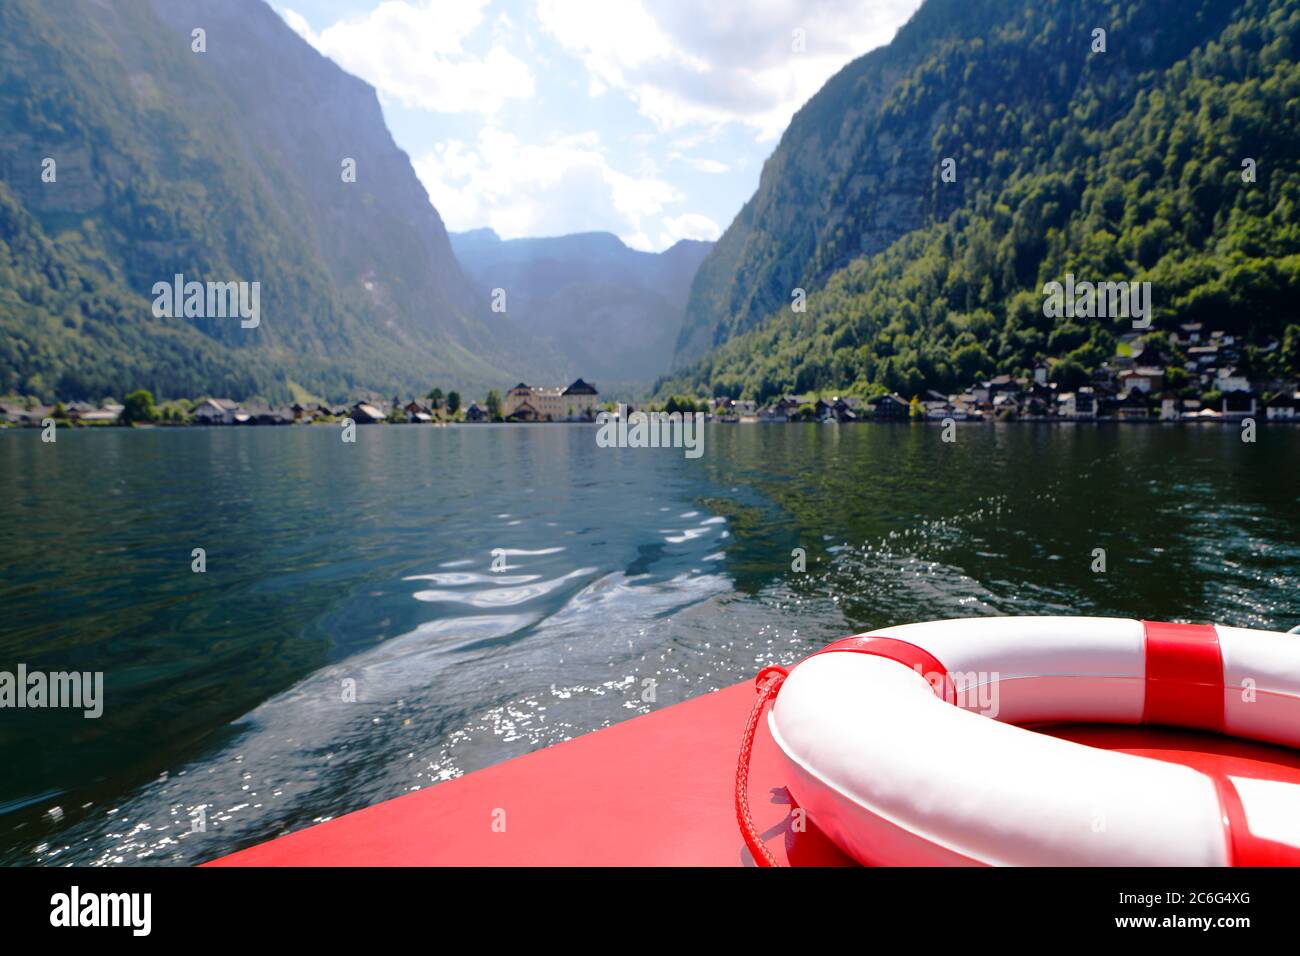 Sicherheitsschild, Rettungsring auf dem roten Boot im grünen Wasser des alpinen Bergsees, Österreich Stockfoto